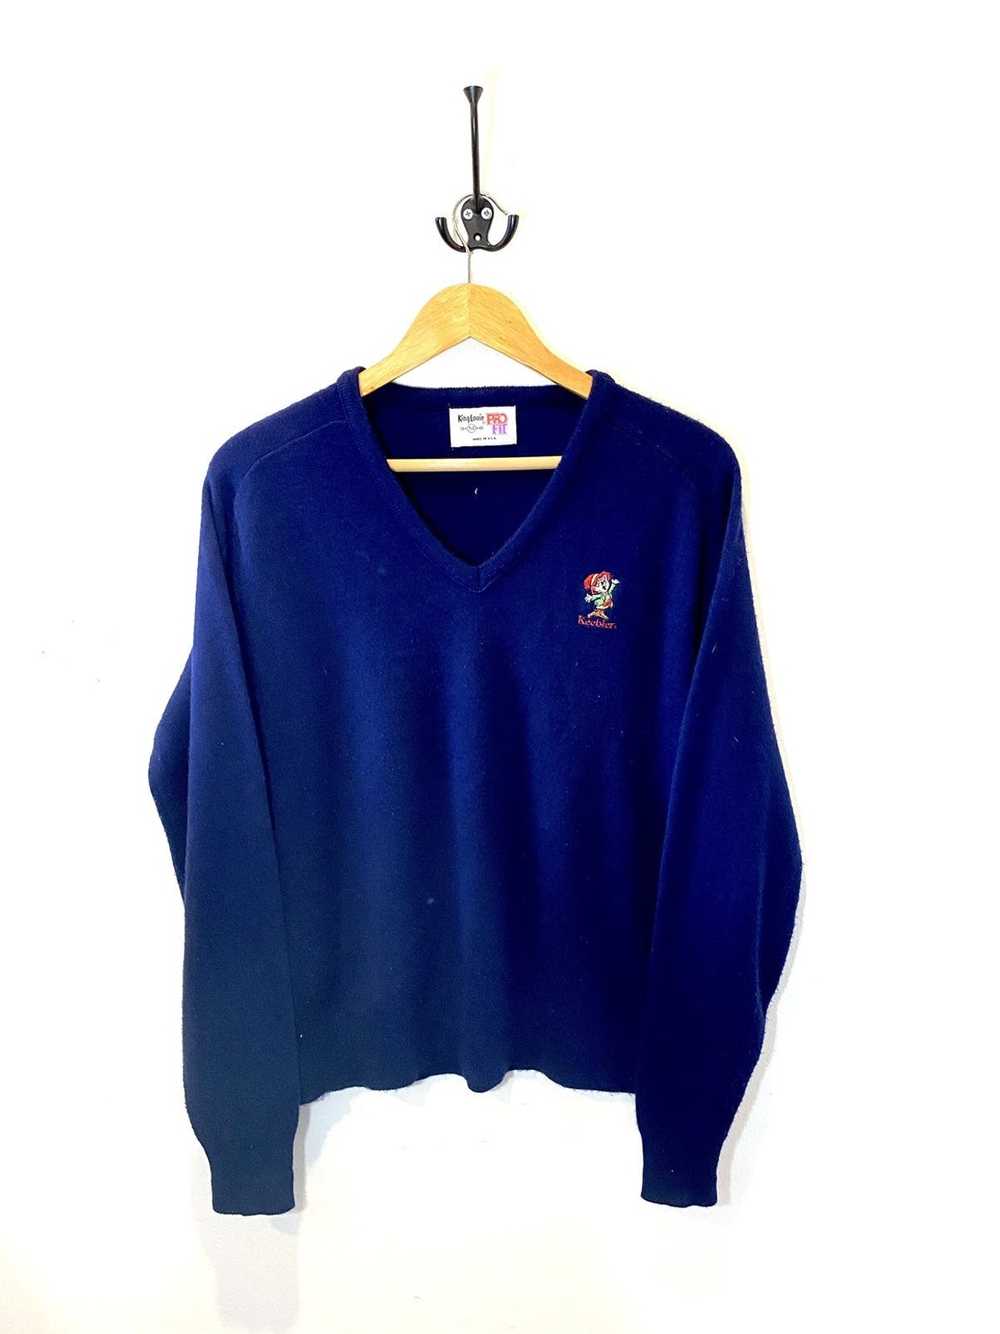 Vintage Vintage 1980’s Keebler Embroidered Sweater - image 1